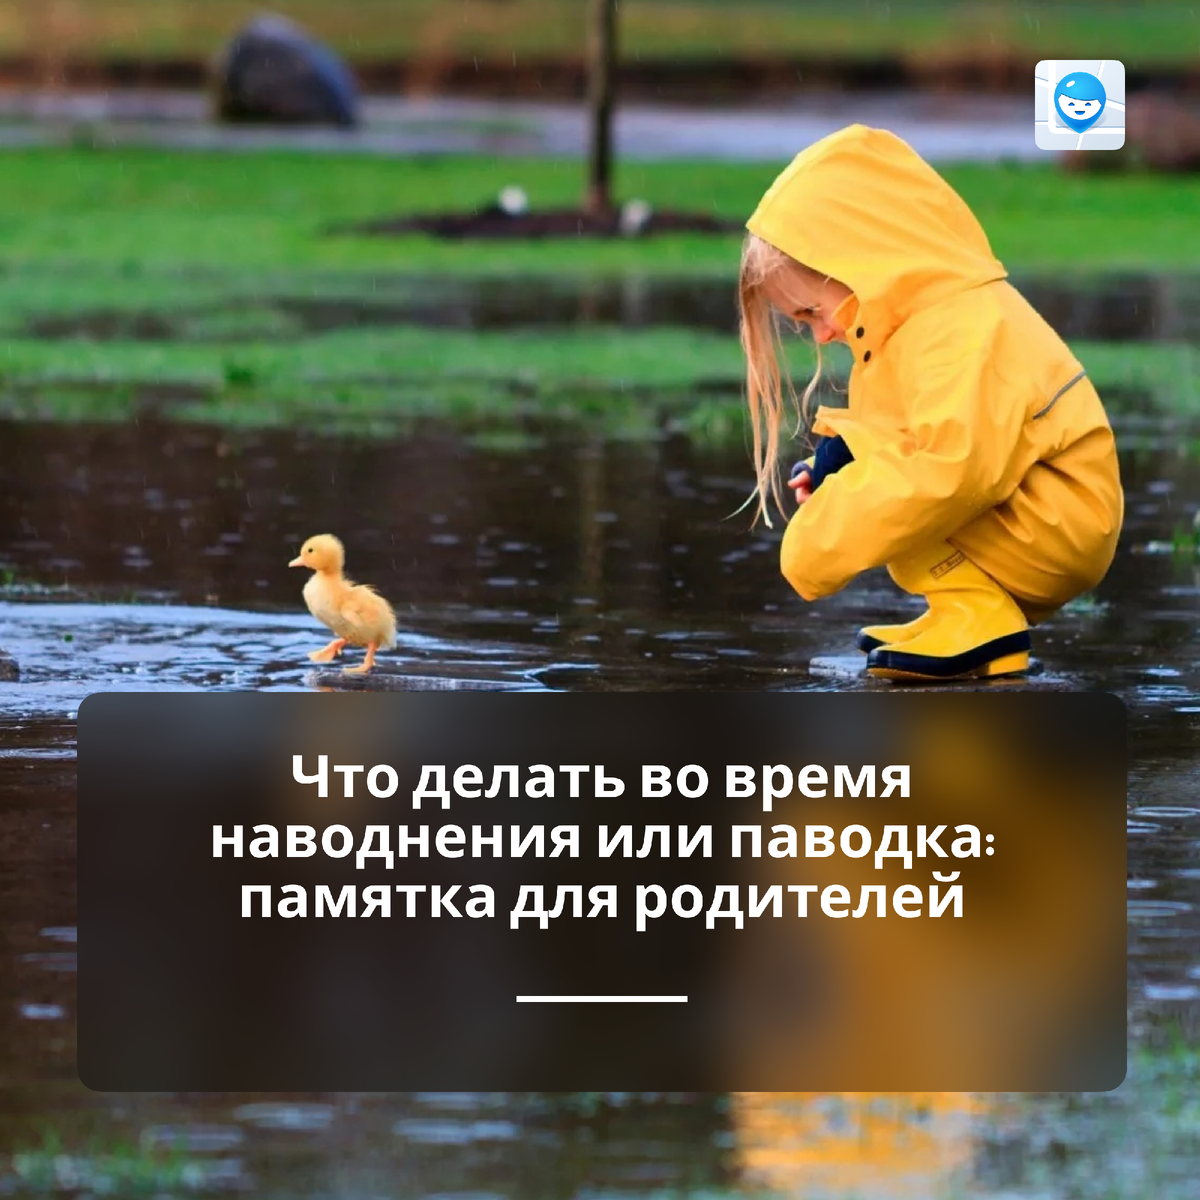 Из-за аномальных паводков жители нескольких регионов России и Казахстана столкнулись с проблемой наводнений. Наводнение — стихийное бедствие, при котором значительная территория затопляется водой.